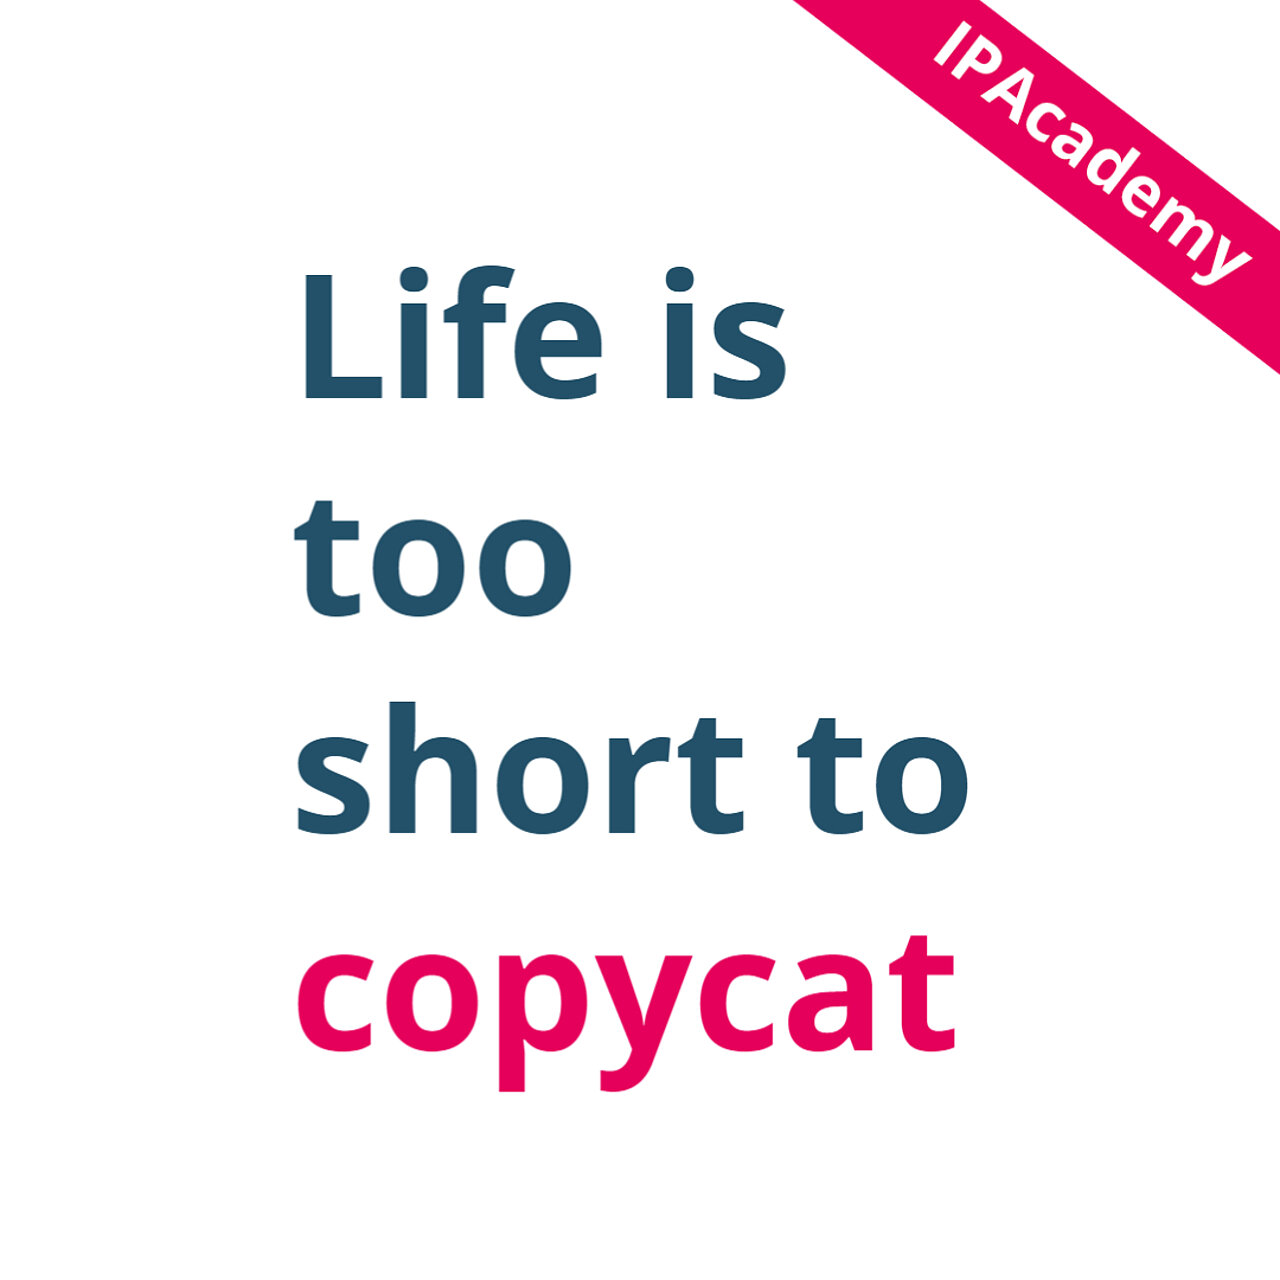 Bild mit Text: Life ist too short to copycat